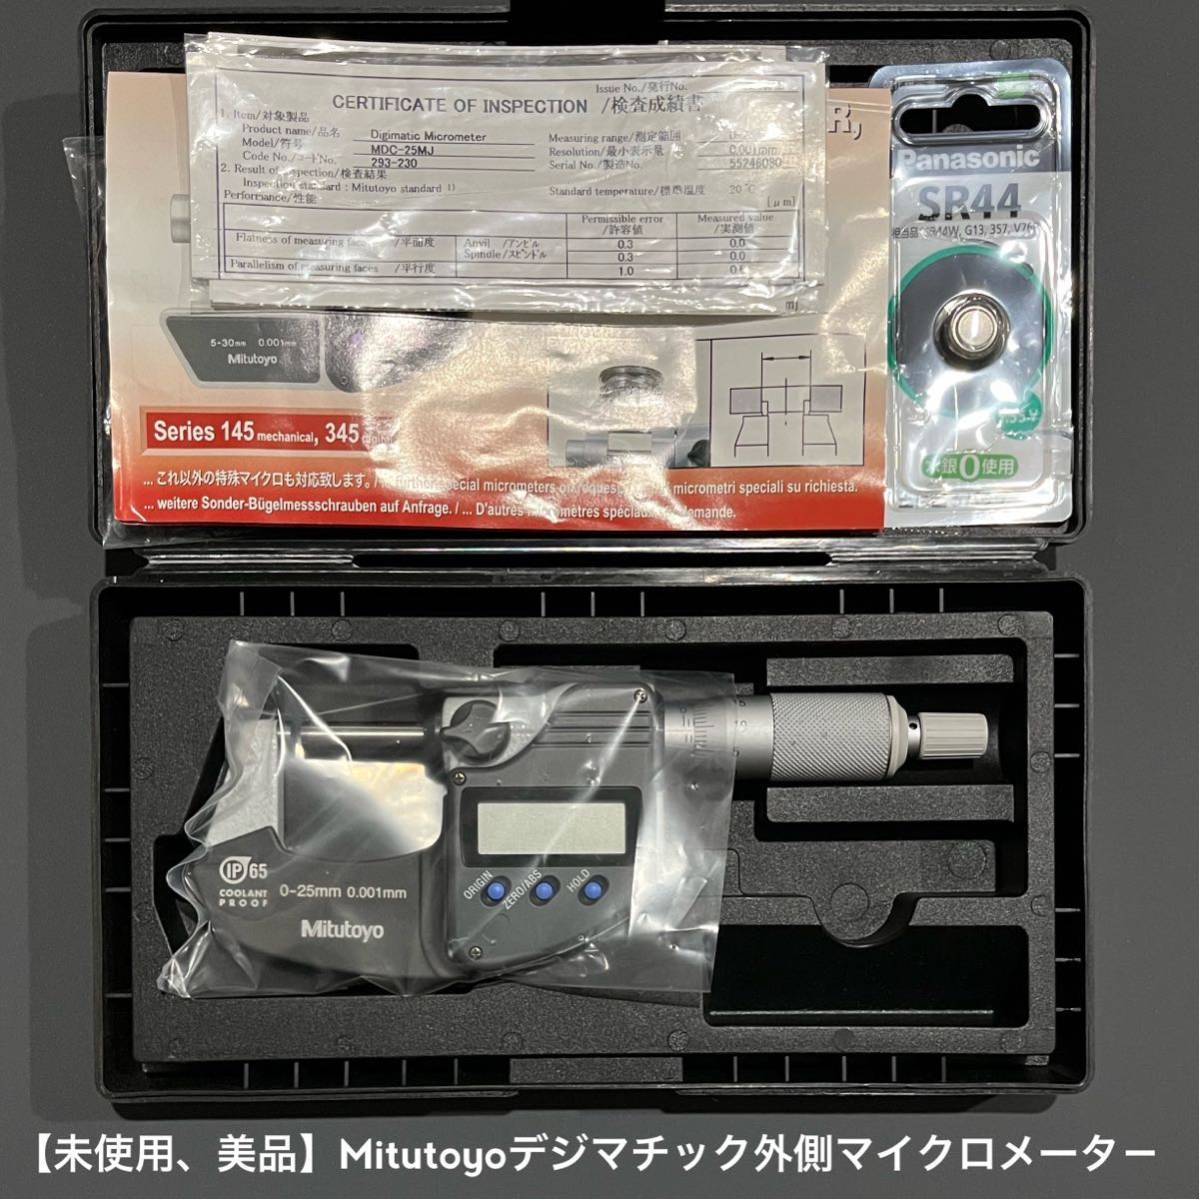 【美品】Mitutoyo ミツトヨ デジマチック外側マイクロメータ－0〜25mm MDC-25MJ 293-230未使用